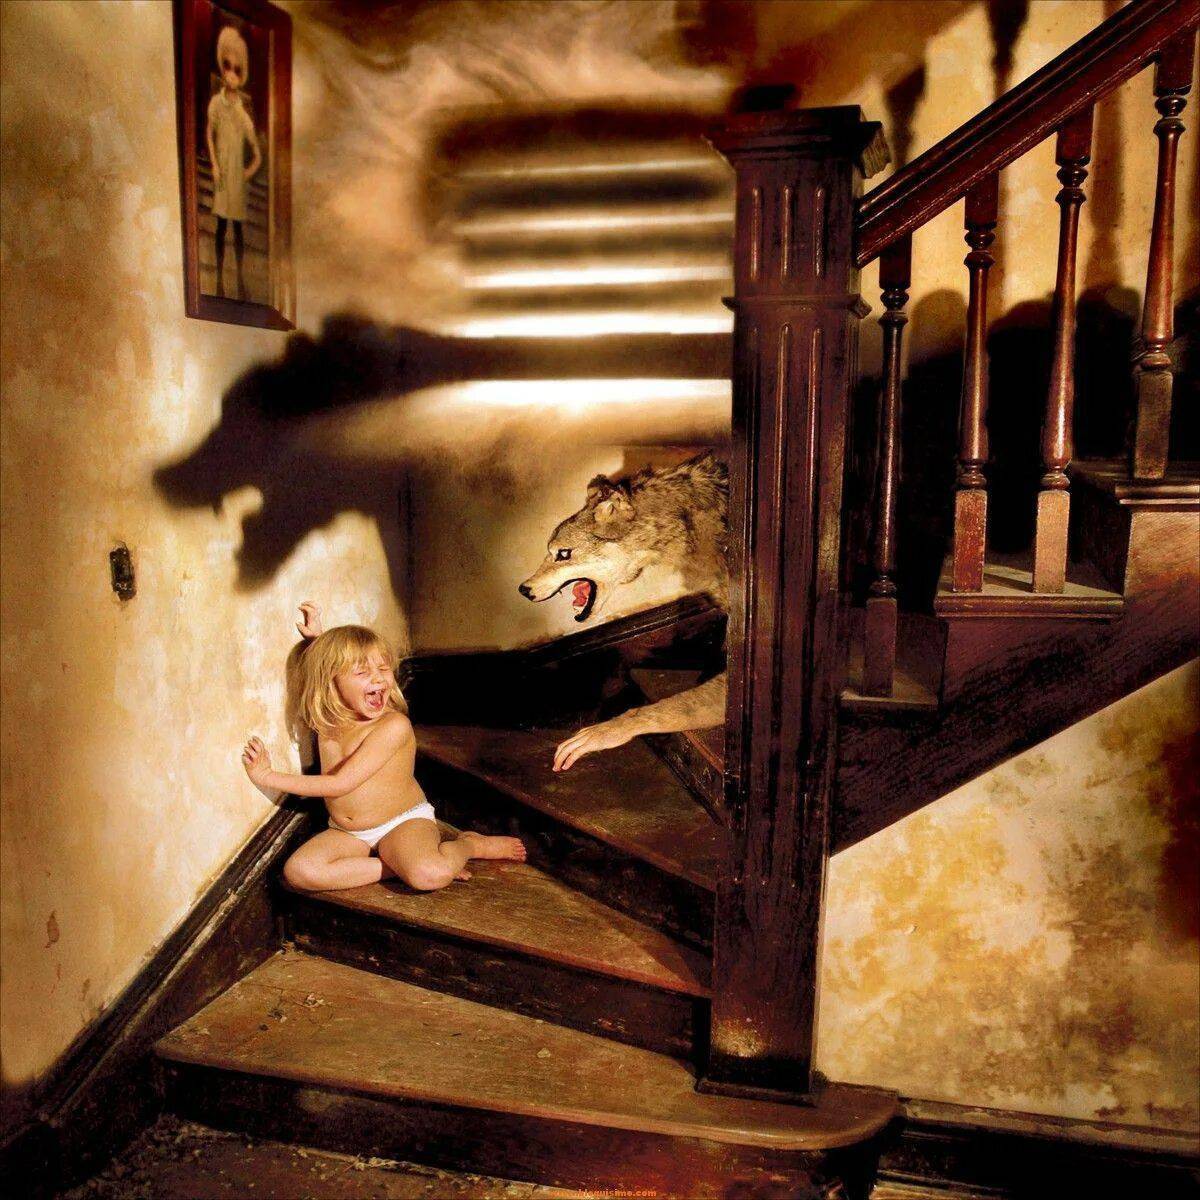 Папа играет в страшные. Ужастики Джошуа Хоффайн. Джошуа Хоффин детские страхи. Детские страхи фотопроект Джошуа Хоффайна.